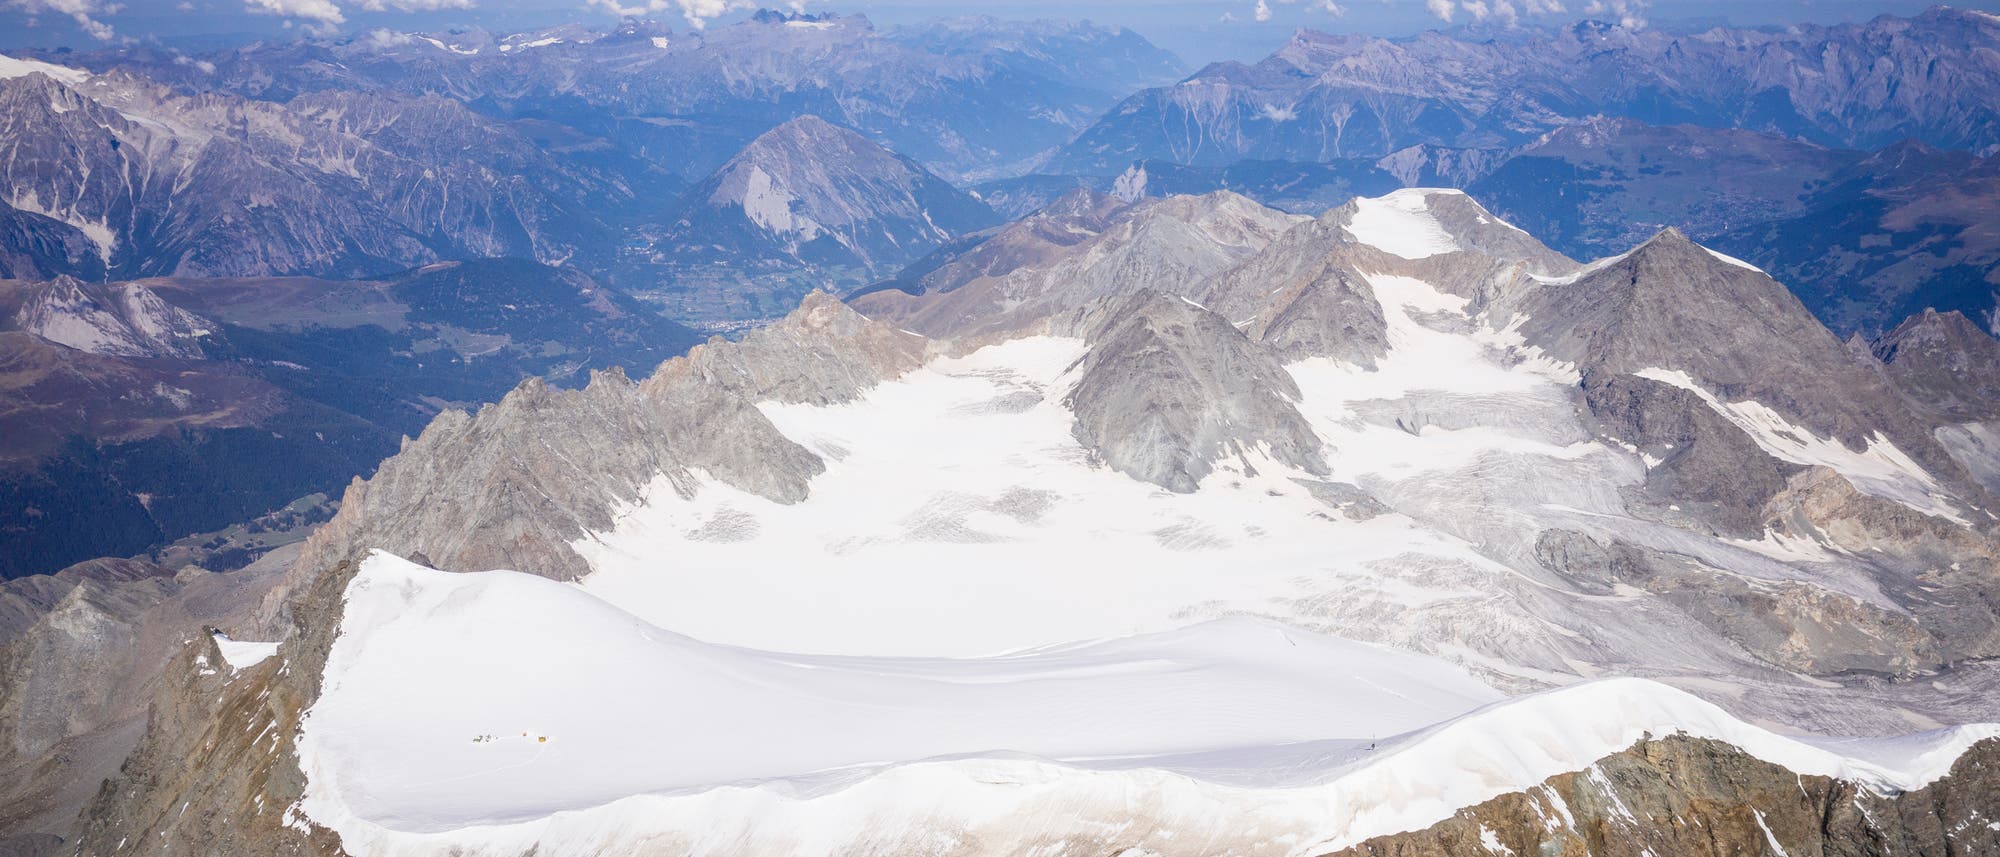 Luftaufnahme des Alpengletschers am Grand Combin: ein gletscherbedeckter Gebirgsrücken, ringsrum weitere Berggipfel ohne Schnee und Eis